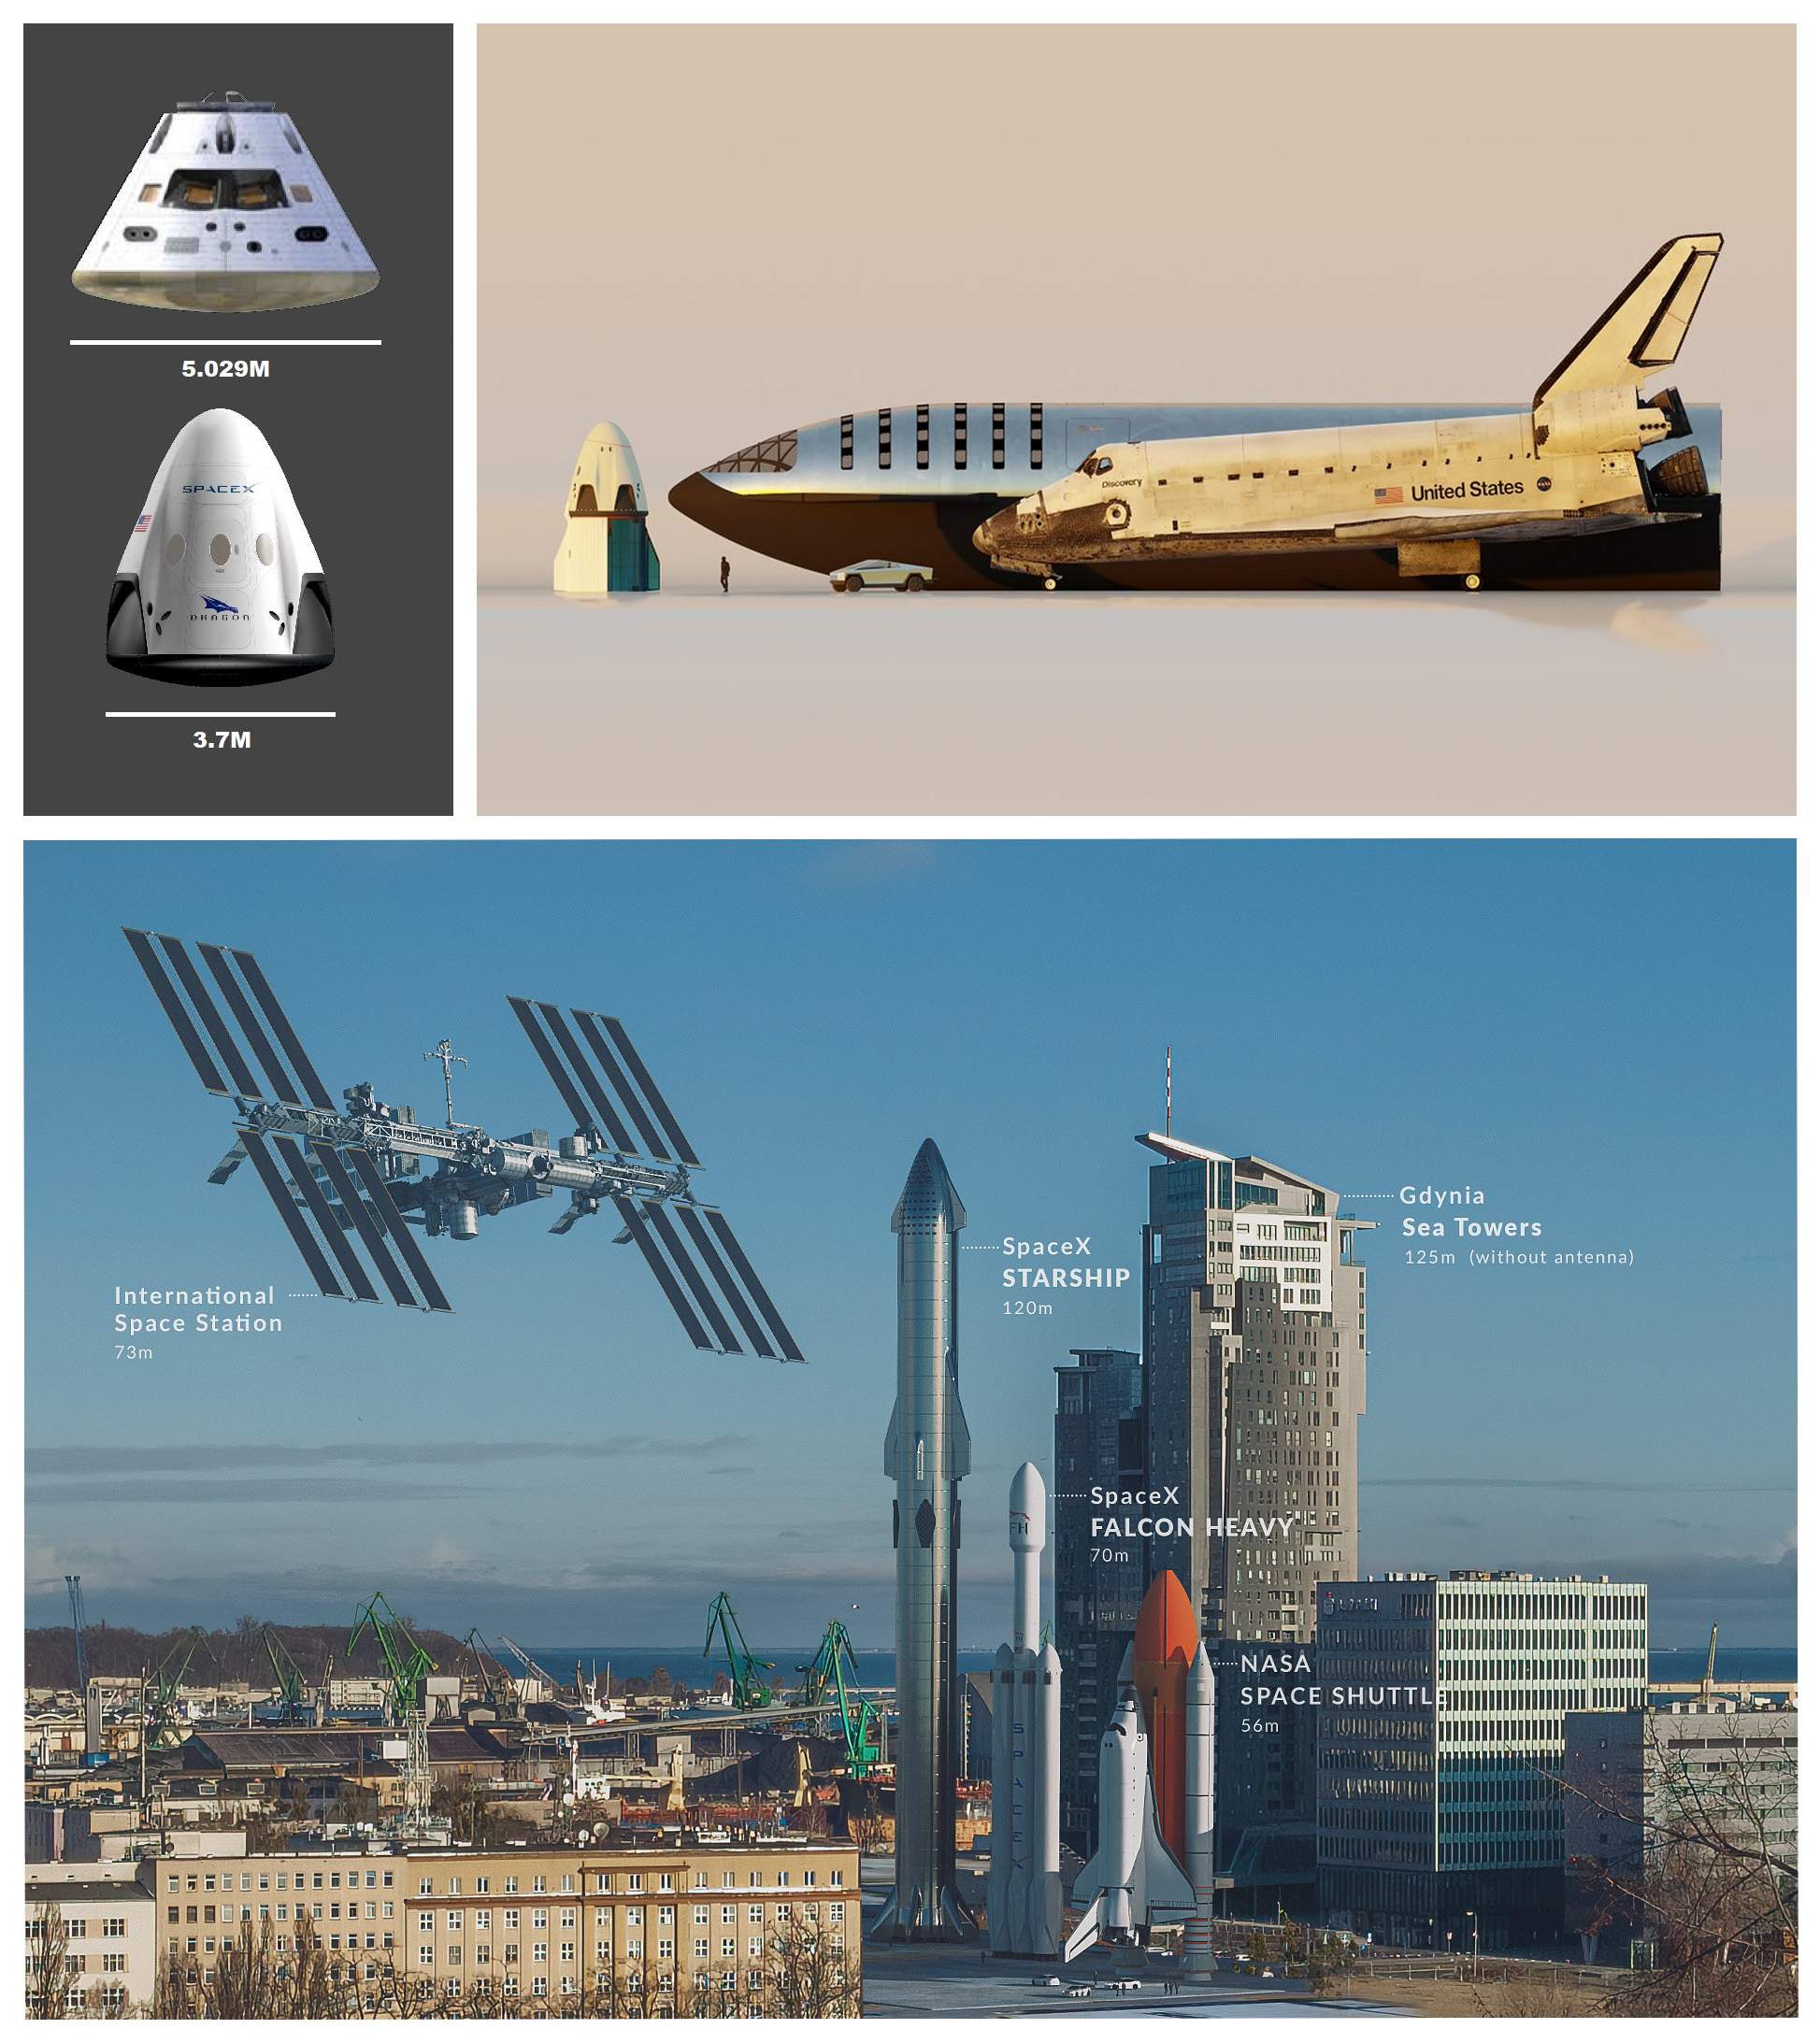 Na górze: porównanie rozmiarów Oriona oraz kapsuły SpaceX Dragon (po lewej); Starship, prom kosmiczny i Dragon (po prawej). Na dole: Międzynarodowa Stacja Kosmiczna, prom kosmiczny, rakieta Falcon Heavy (SpaceX) oraz Starship na szczycie stopnia nośnego SuperHeavy [kolejno: @RogerLewisHolt via Twitter, @Dtrford via Twitter, Dawid Ryś we współpracy z autorem]